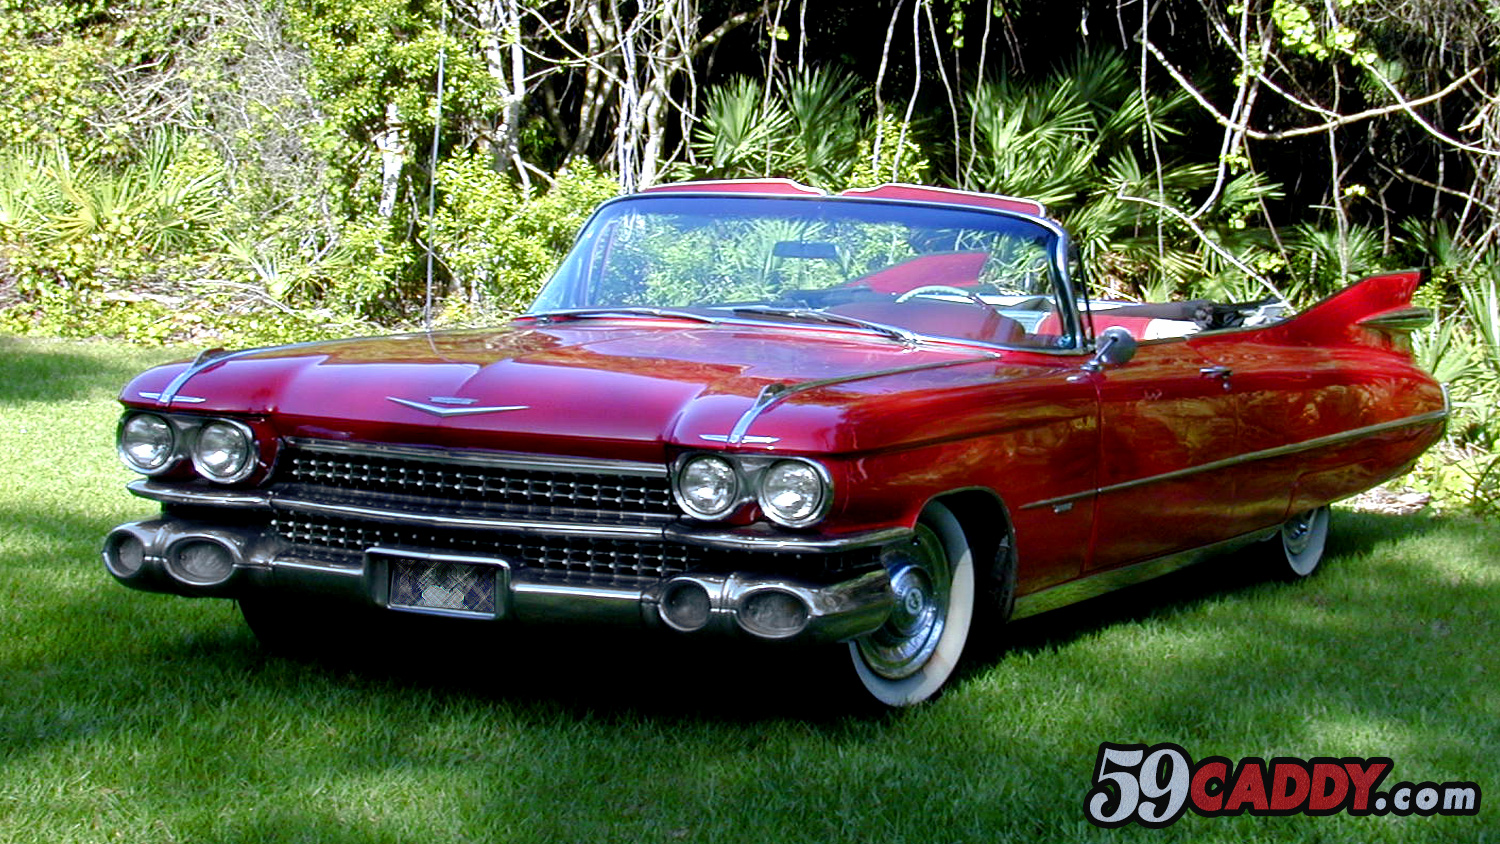 Red 1959 Cadillac Convertible